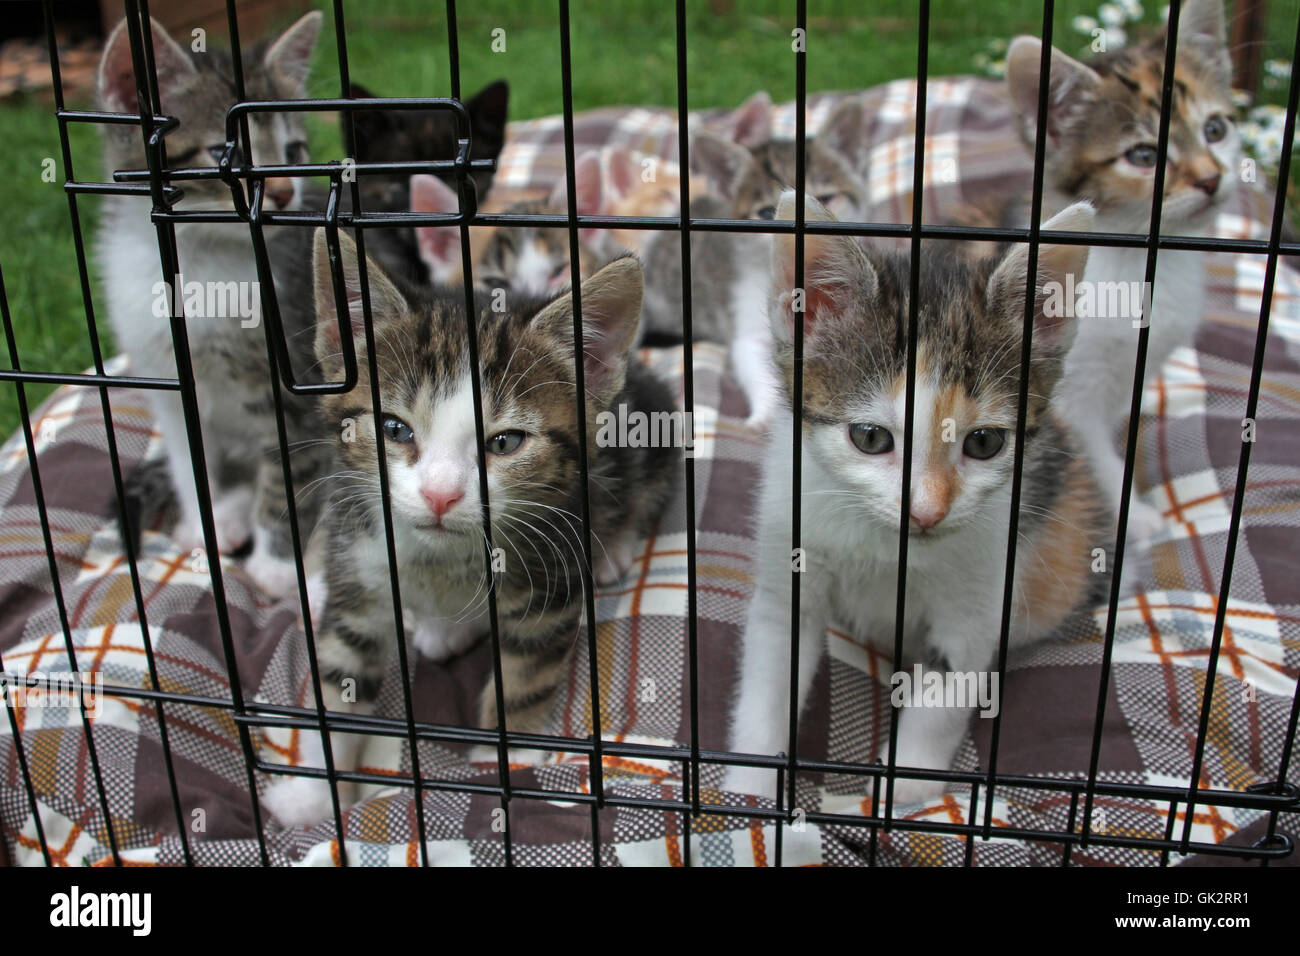 kittens in einerm cage Stock Photo